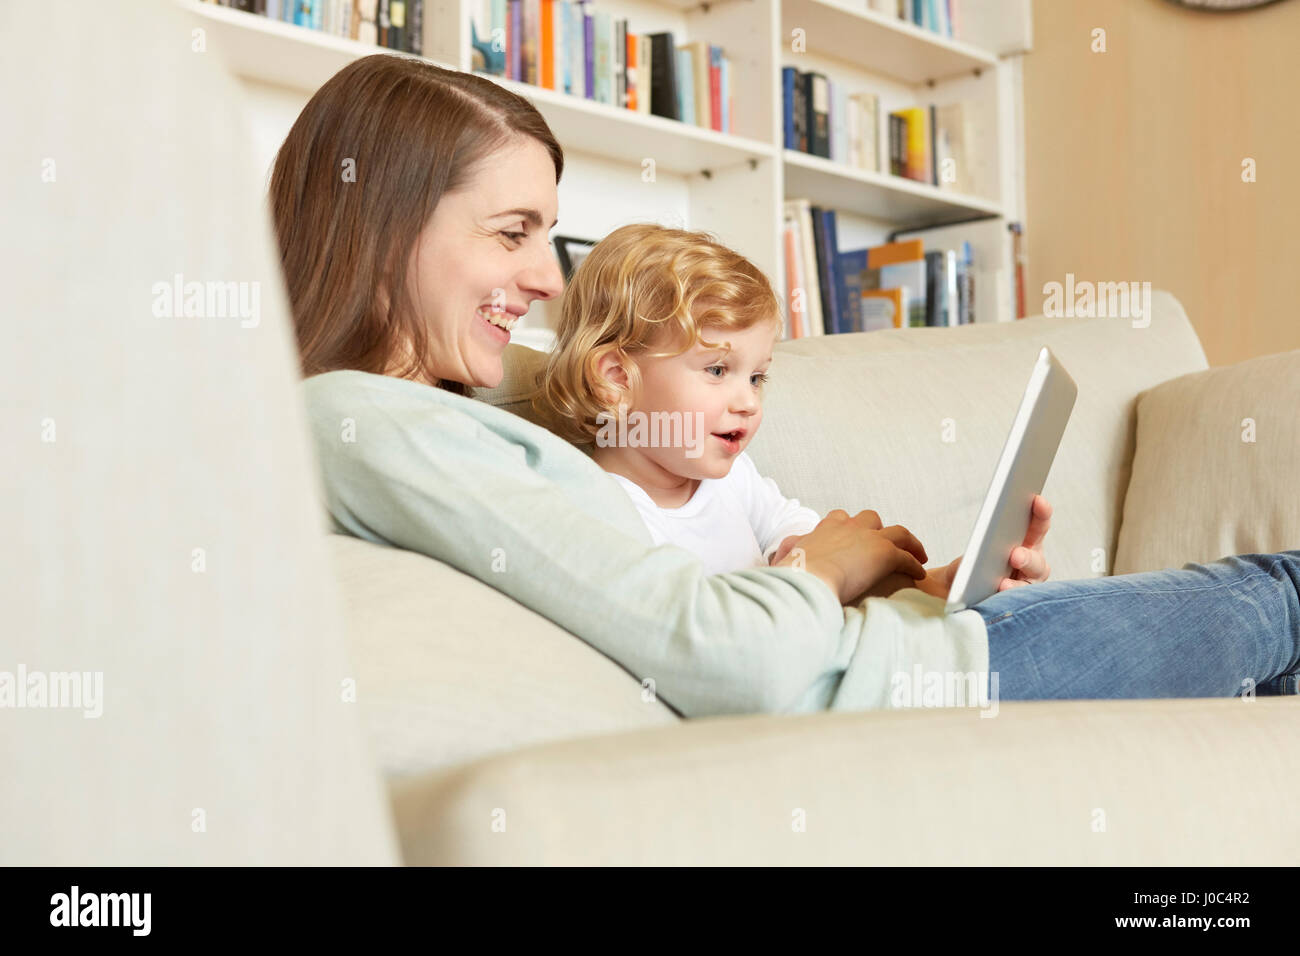 Weiblichen Kleinkind auf Sofa sitzend mit Mutter Blick auf digital-Tablette Stockfoto